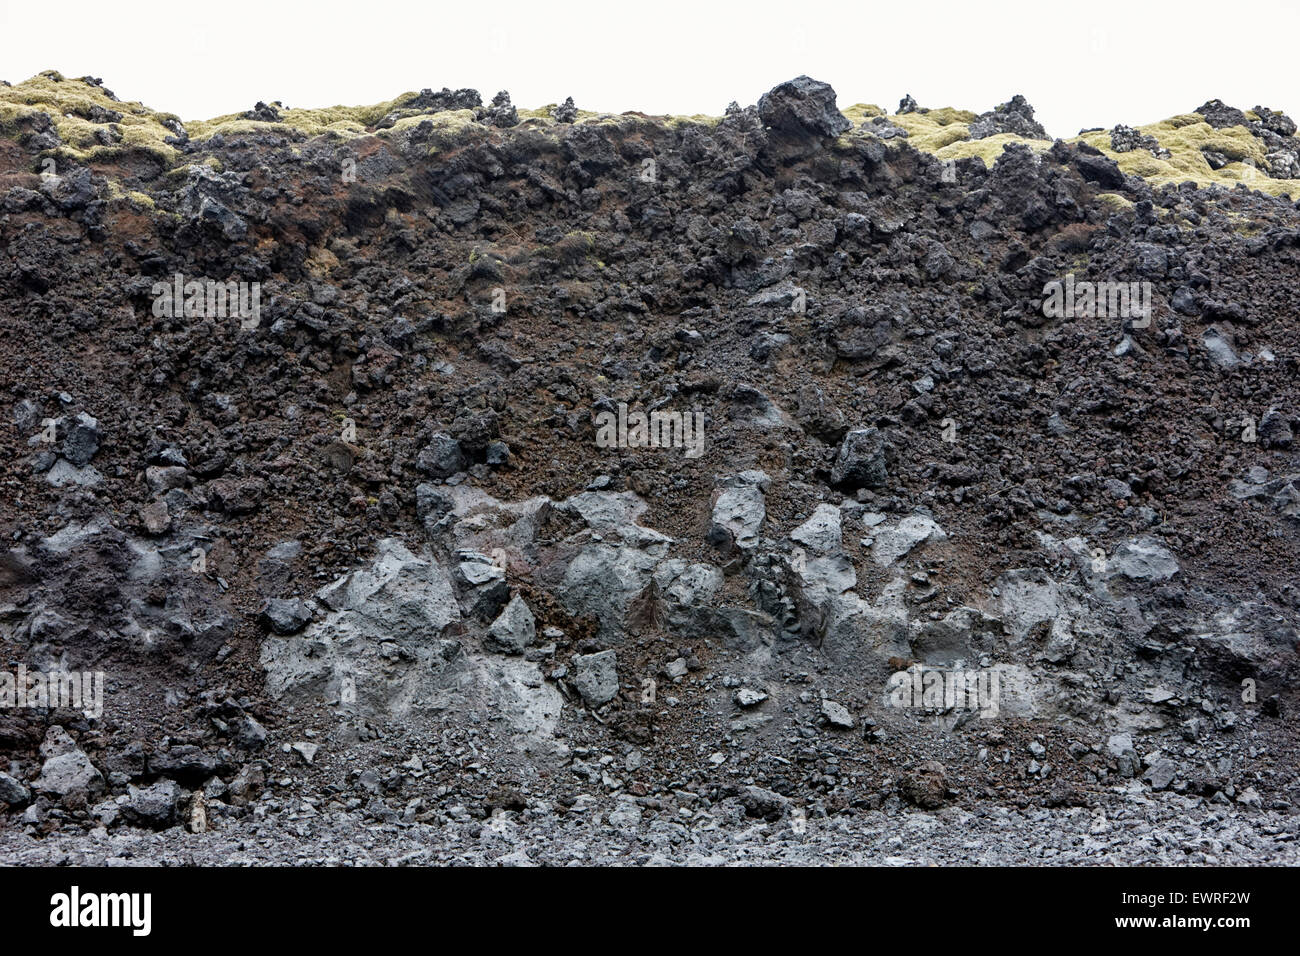 Sezione trasversale del flusso di lava paesaggio nel sud nei pressi di grindavik Islanda Foto Stock